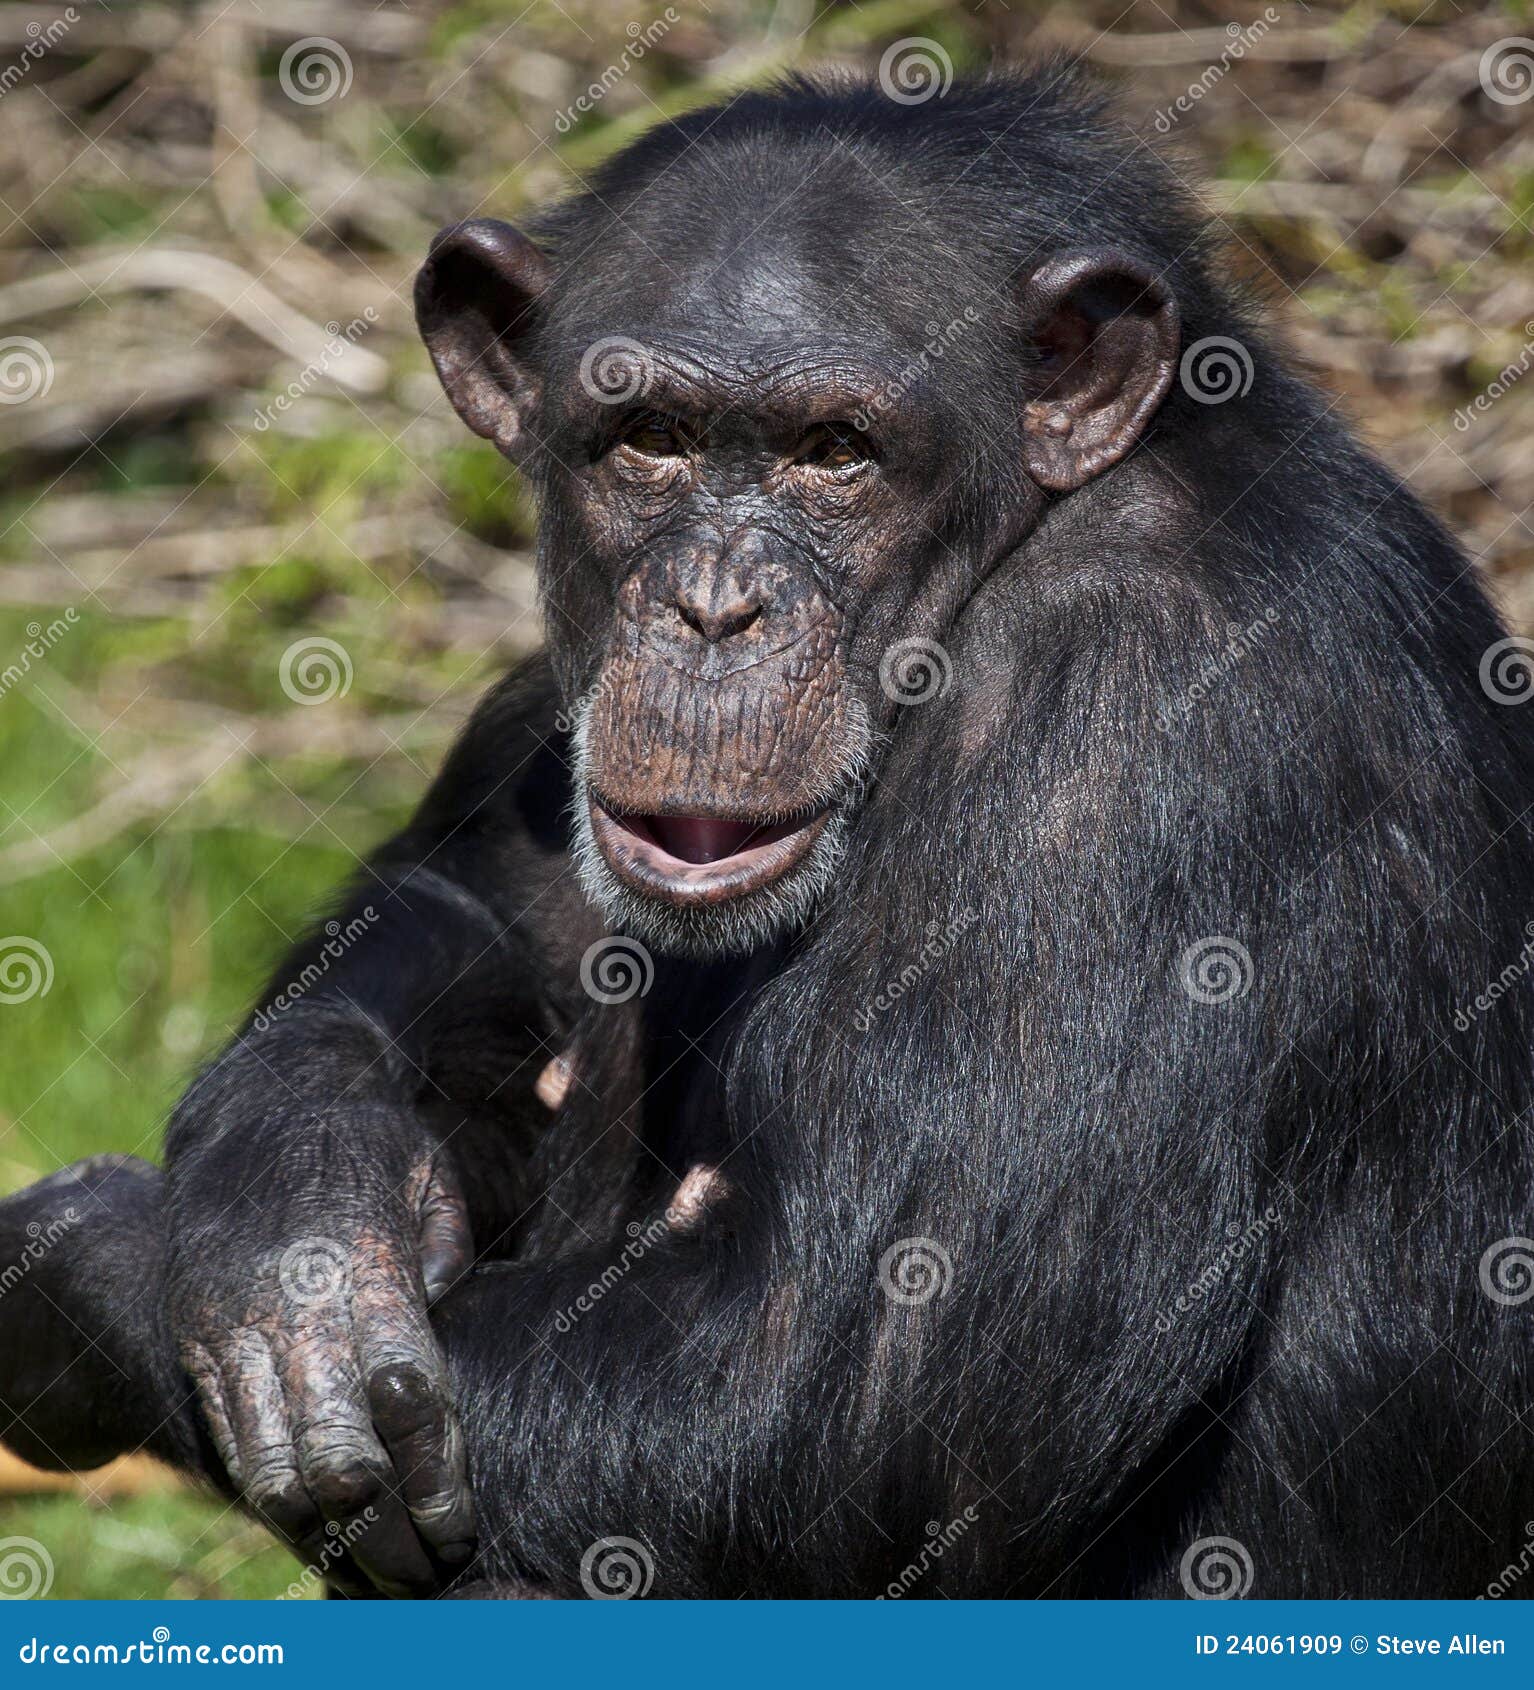 chimpanzee - zambia